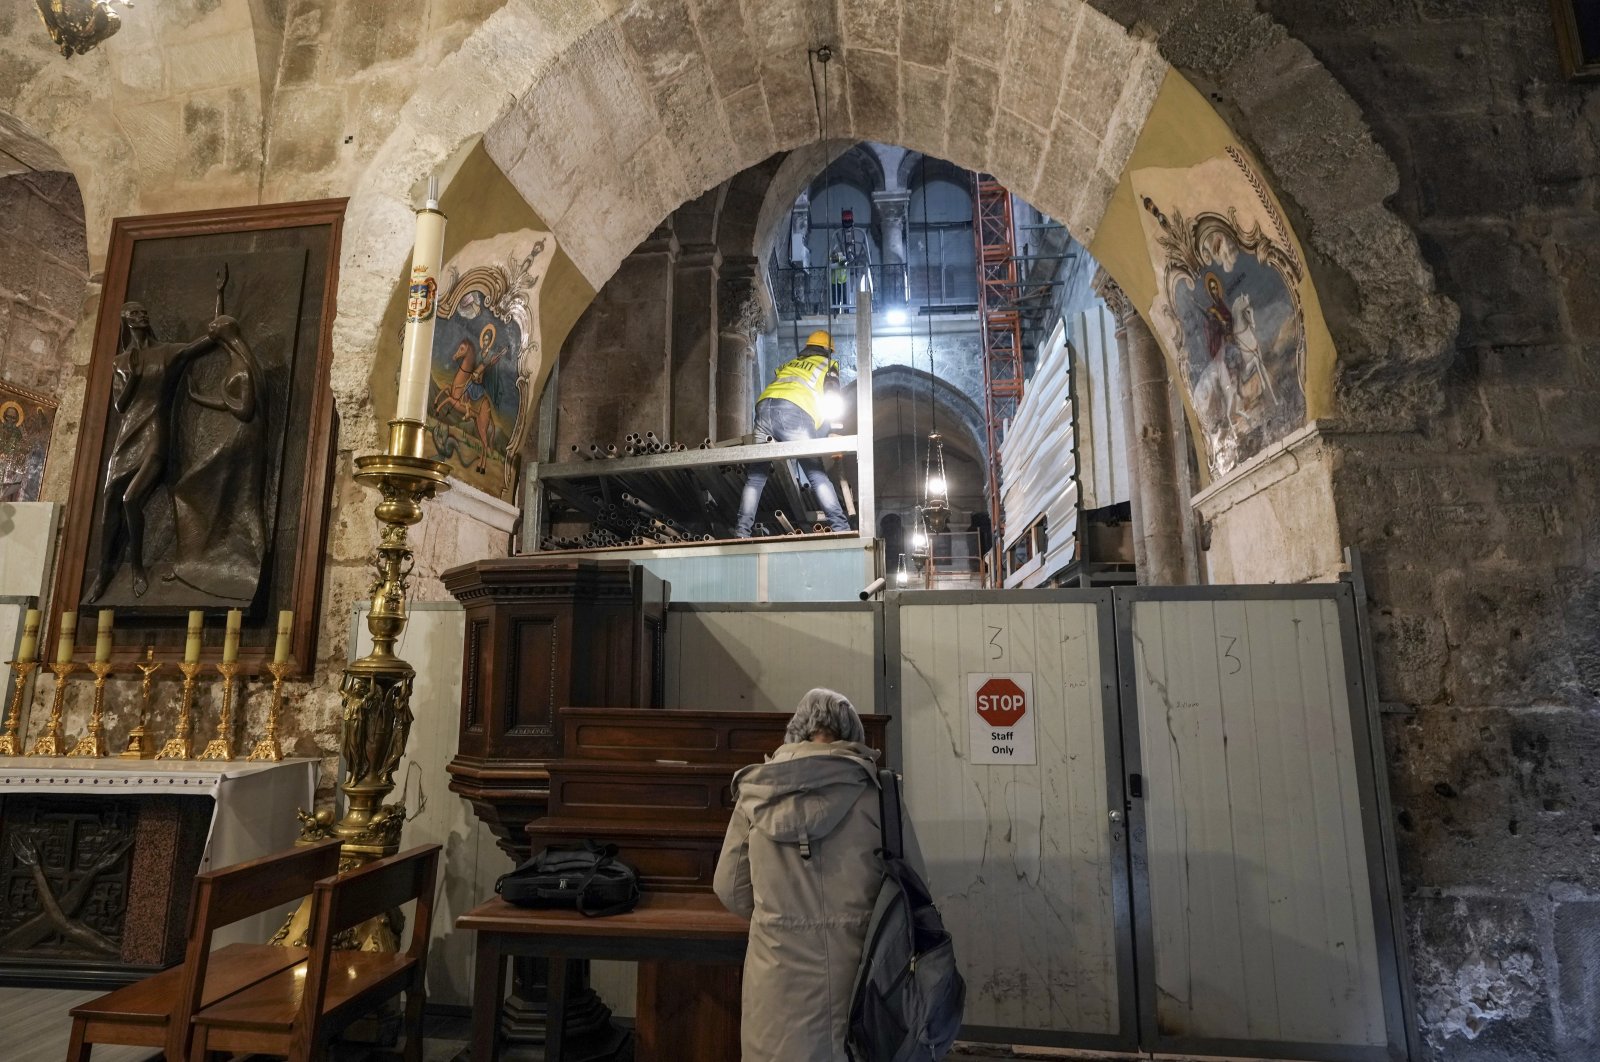 Lantai batu Makam Suci Yerusalem mengalami perbaikan ekstensif